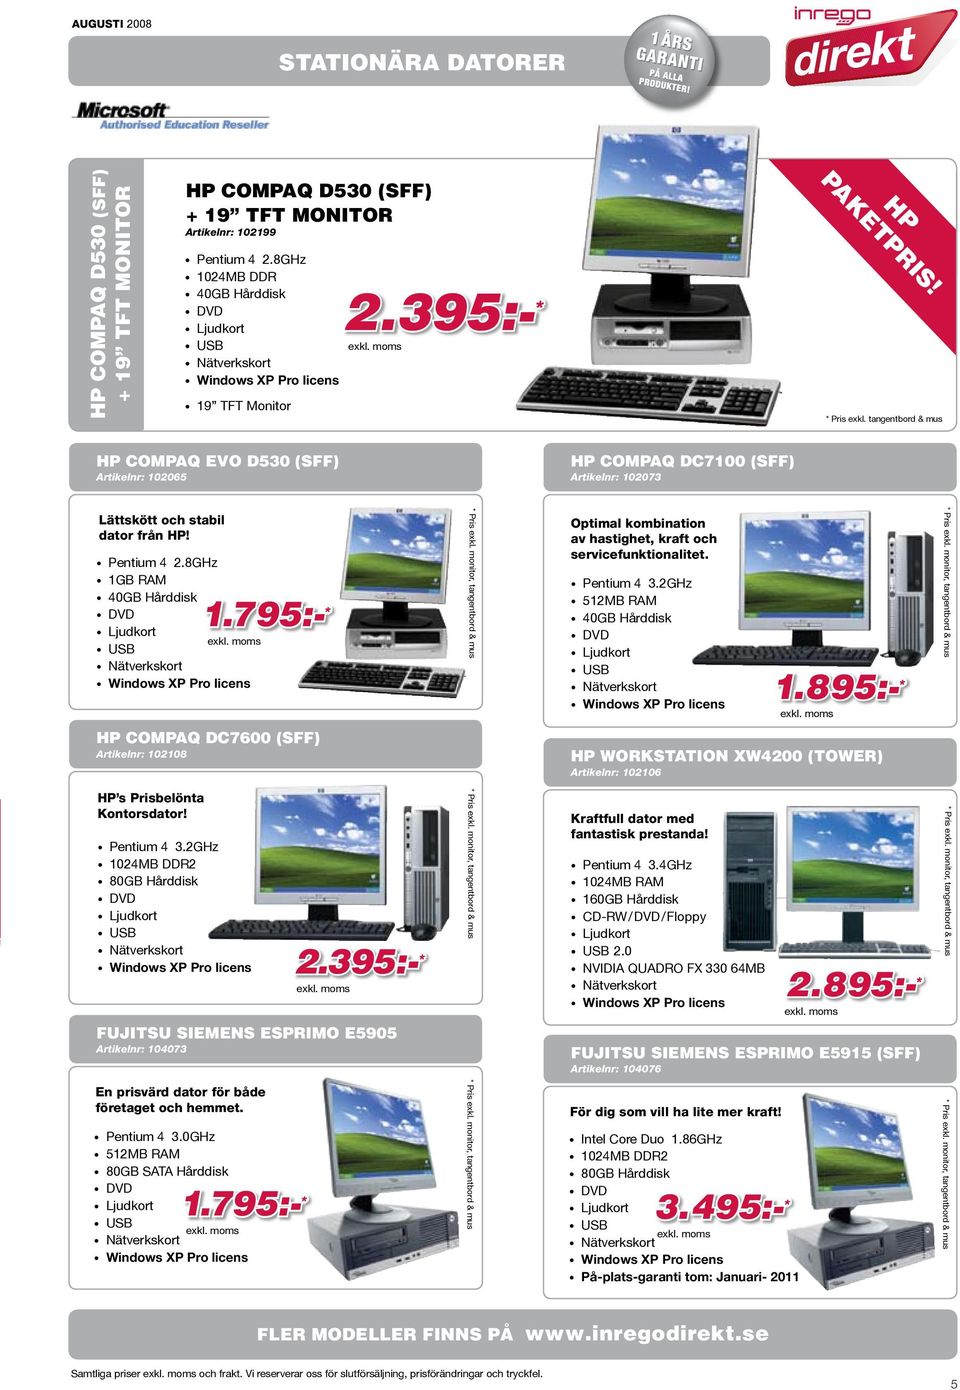 8GHz 1GB RAM HP Compaq DC7600 (SFF) Artikelnr: 102108 HP s Prisbelönta Kontorsdator! Pentium 4 3.2GHz 2.